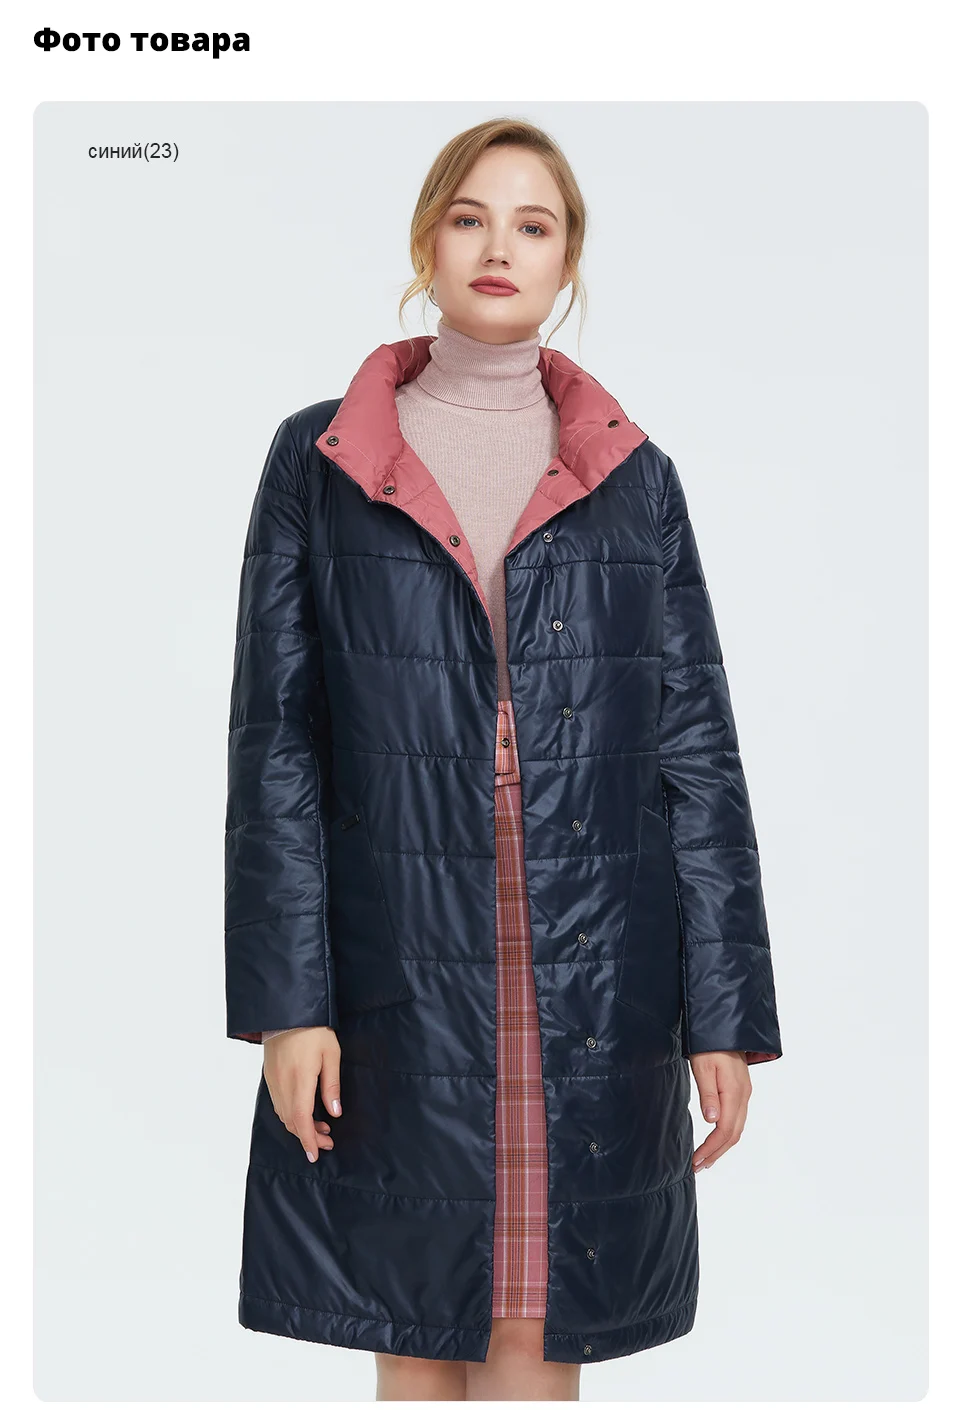 Астрид зимняя куртка женские новые длинное пальто Женщины Slim fit сплошной Разноцветные куртки теплые ветрозащитные высокое качество темперамент coatAM1960